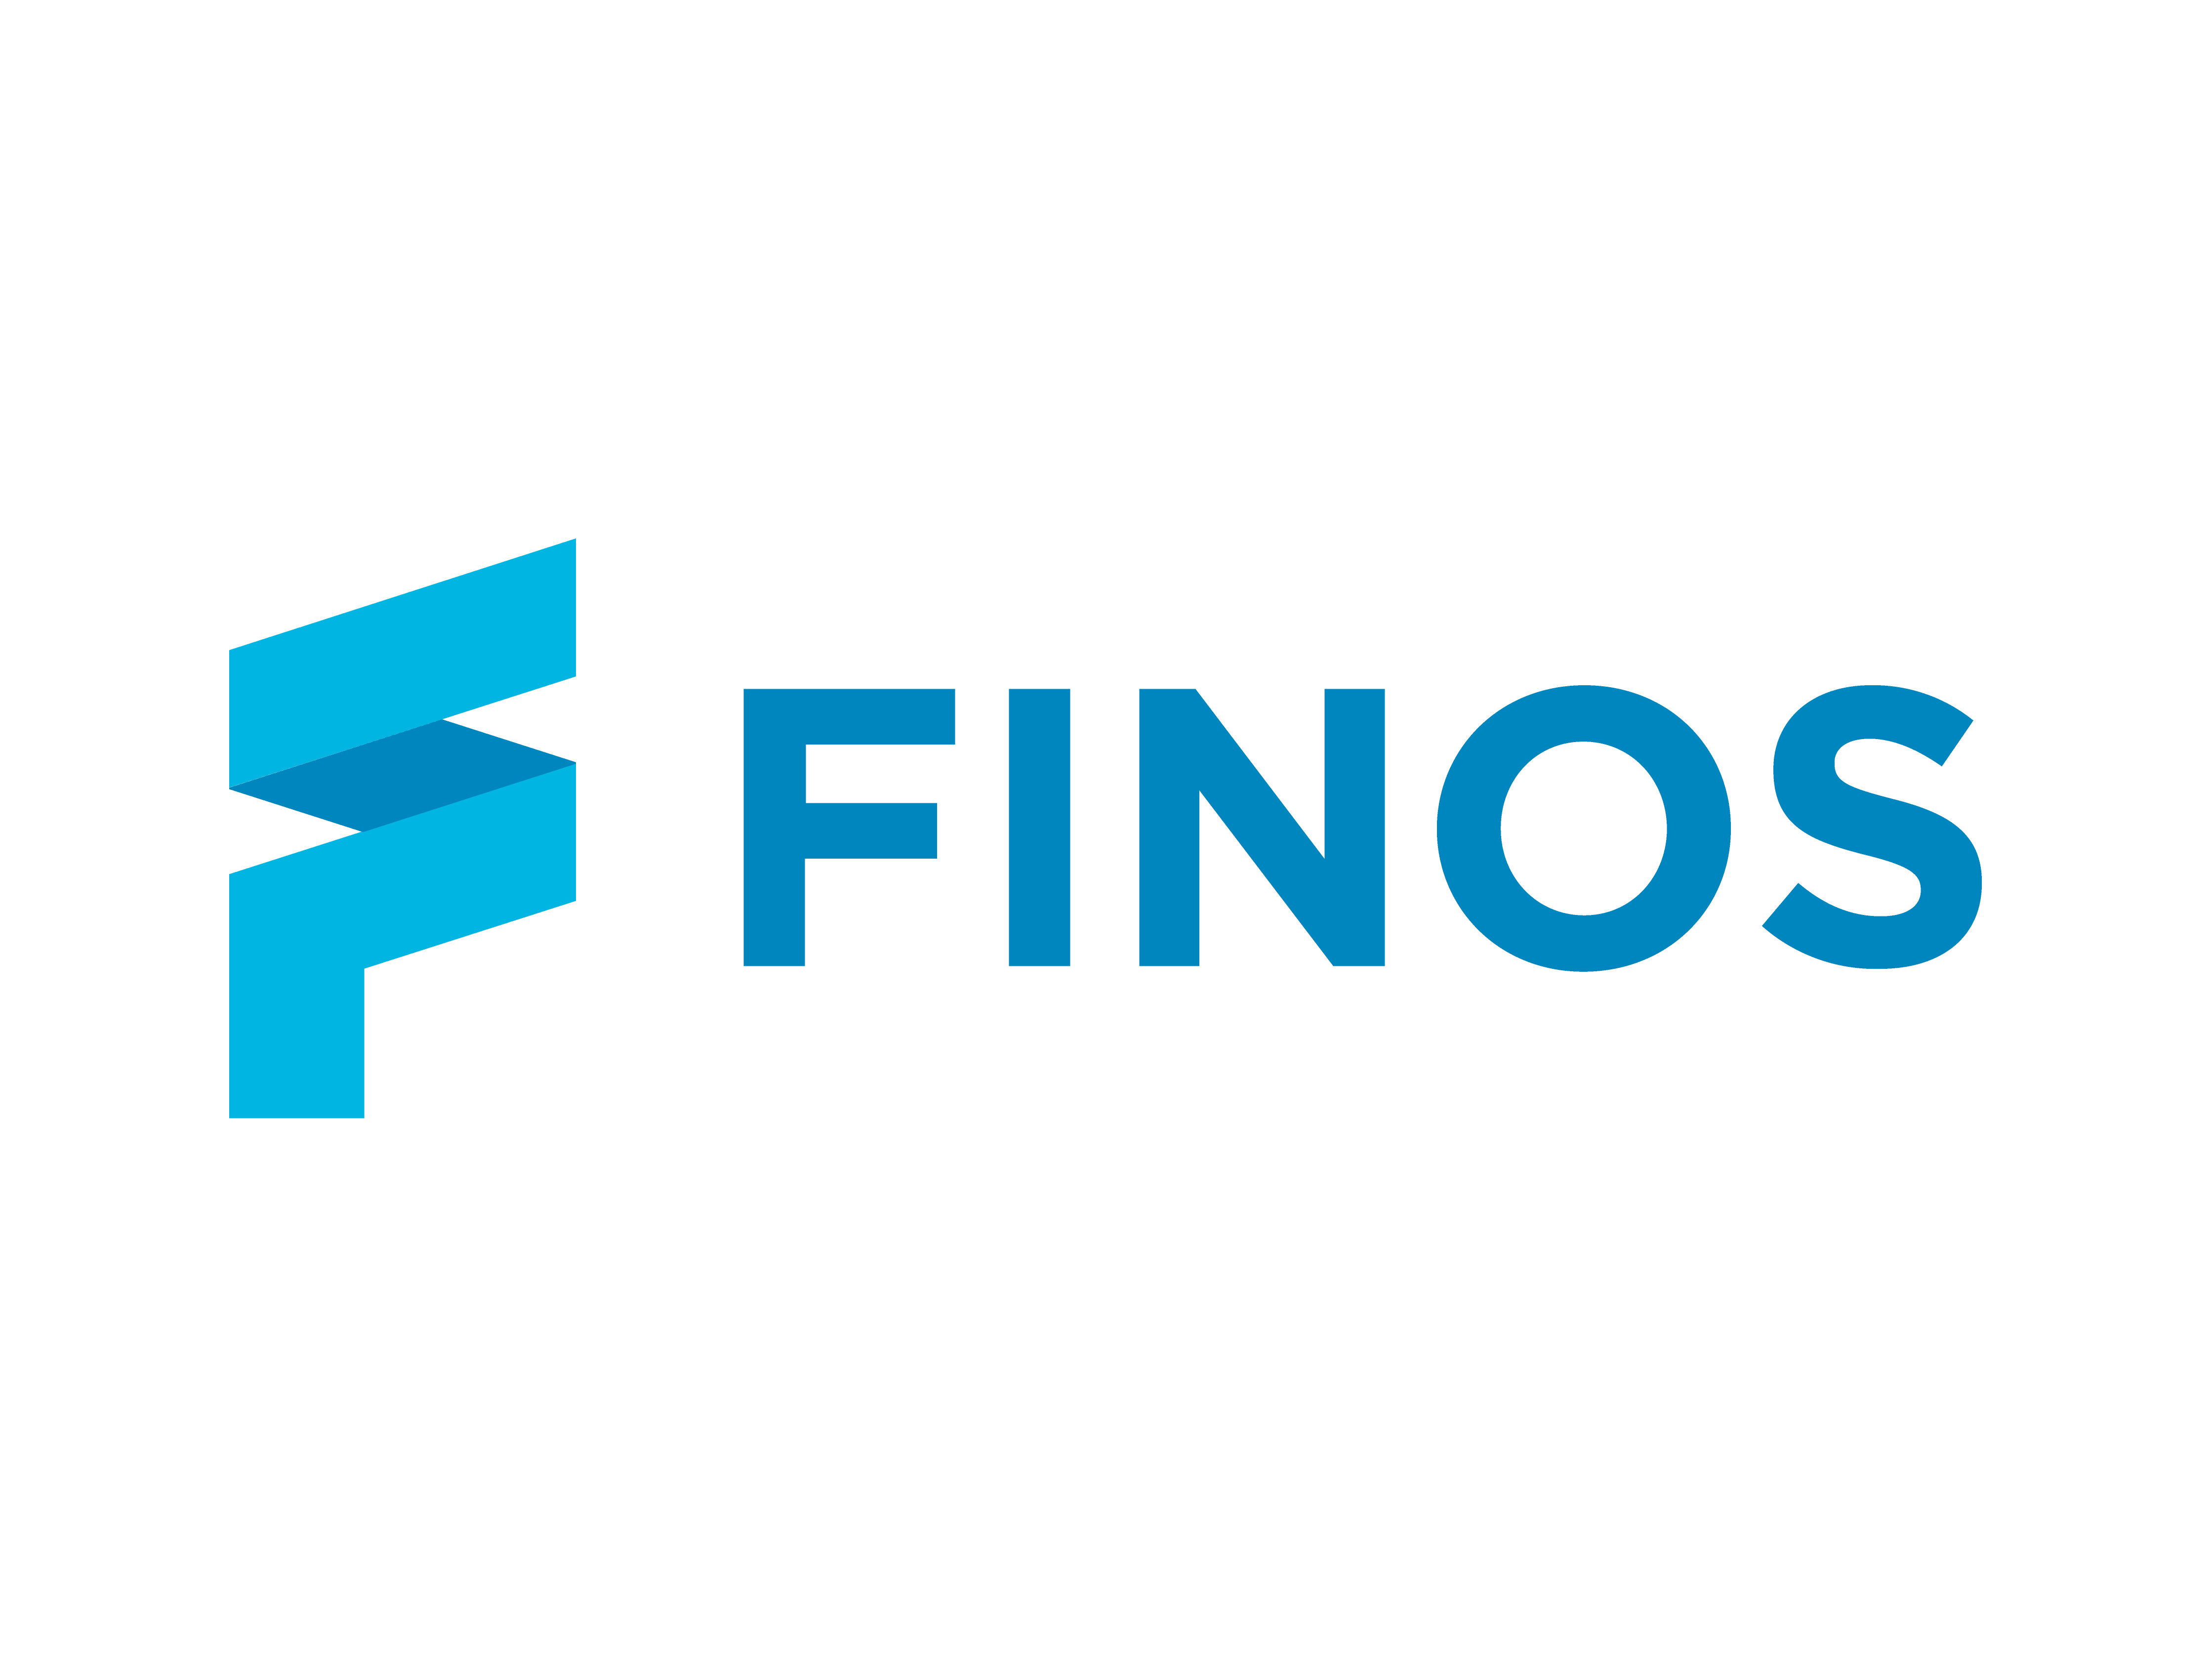 FINOS Foundation